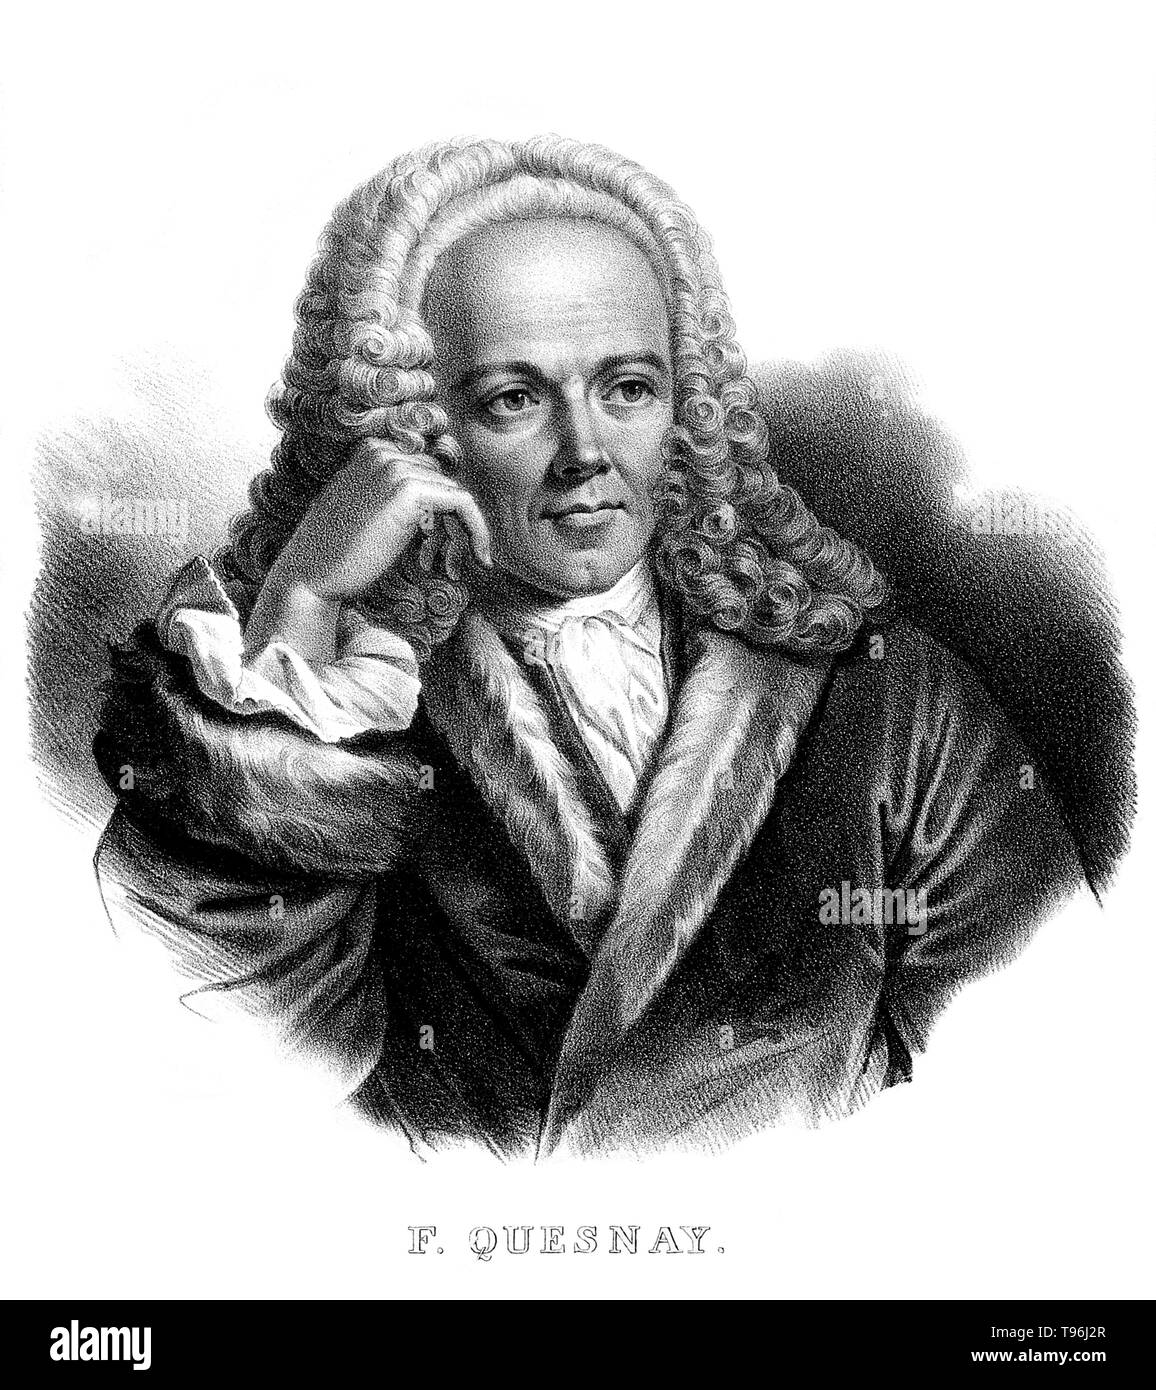 François Quesnay (Juin 4, 1694 - décembre 16, 1774) était un médecin et économiste français. Il a étudié la médecine à Paris, et devient médecin du roi Louis XV de France. À partir de la fin des années 1740 il a commencé à consacrer plus de temps à l'étude de l'économie, rassemblant autour de lui un groupe d'éminents penseurs économiques (les Physiocrates). Il a publié le "Tableau économique" (tableau économique) en 1758, qui a fourni les fondements de la pensée de l'physiocrates. Banque D'Images